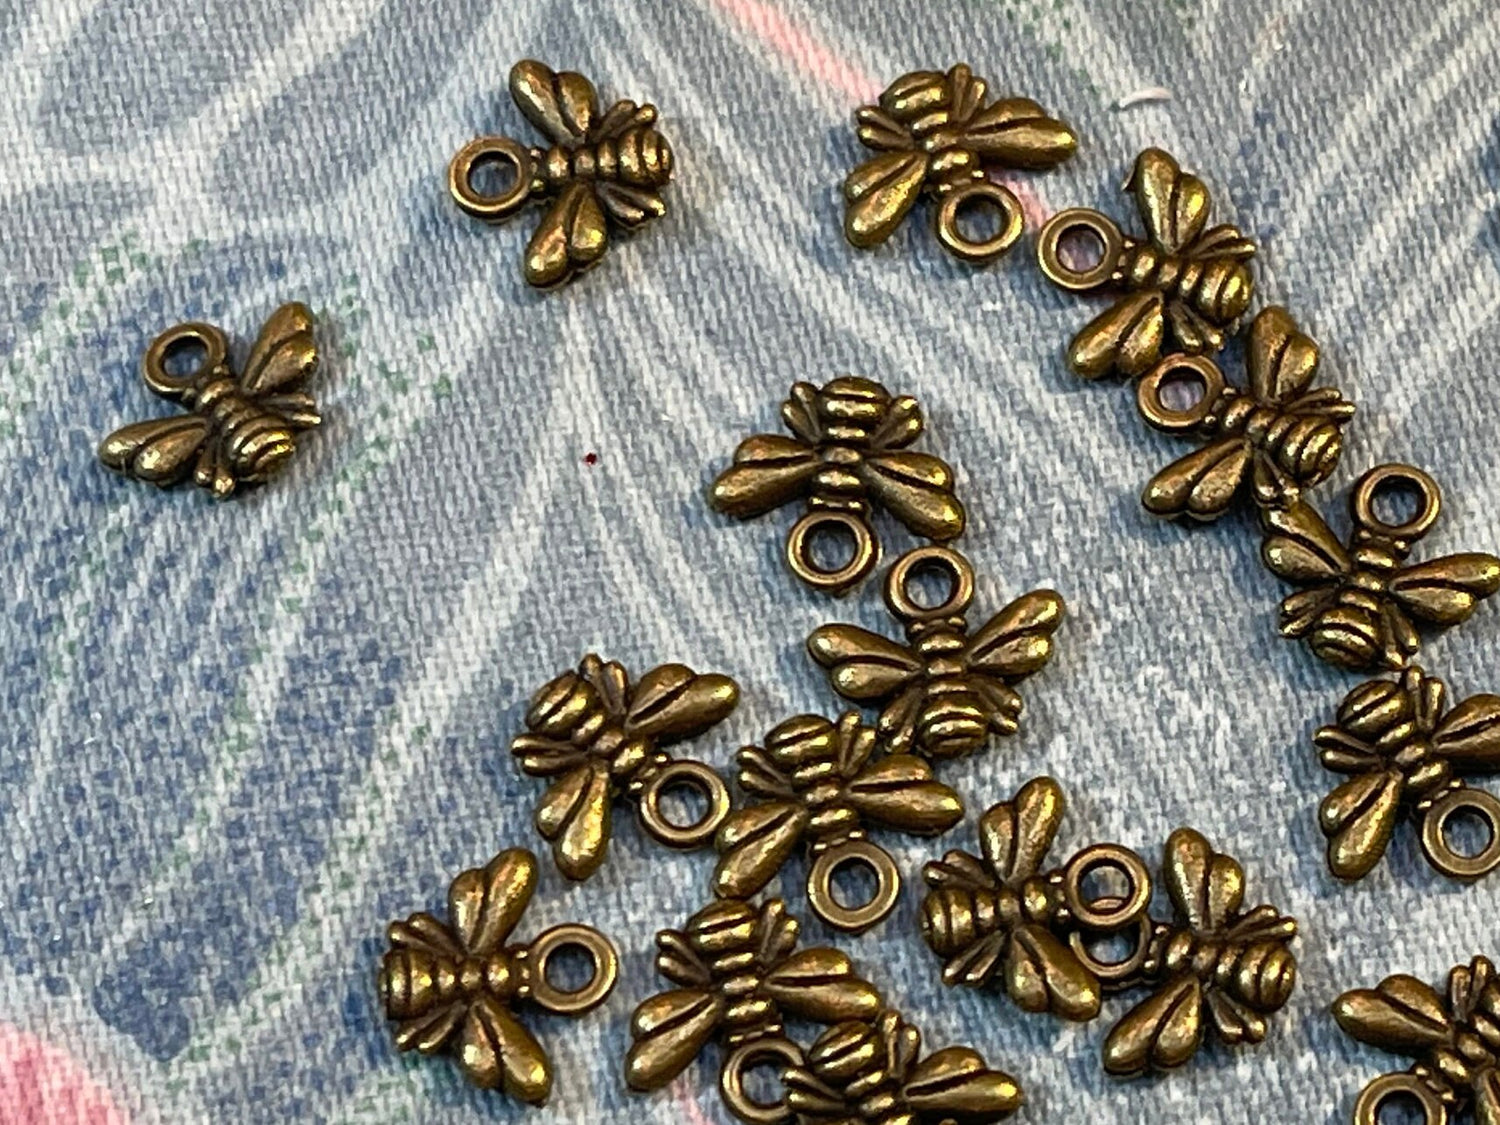 Tiny Honey Bee Charm - Bronze - Left Side 13x7mm - 1Pc – Plazko